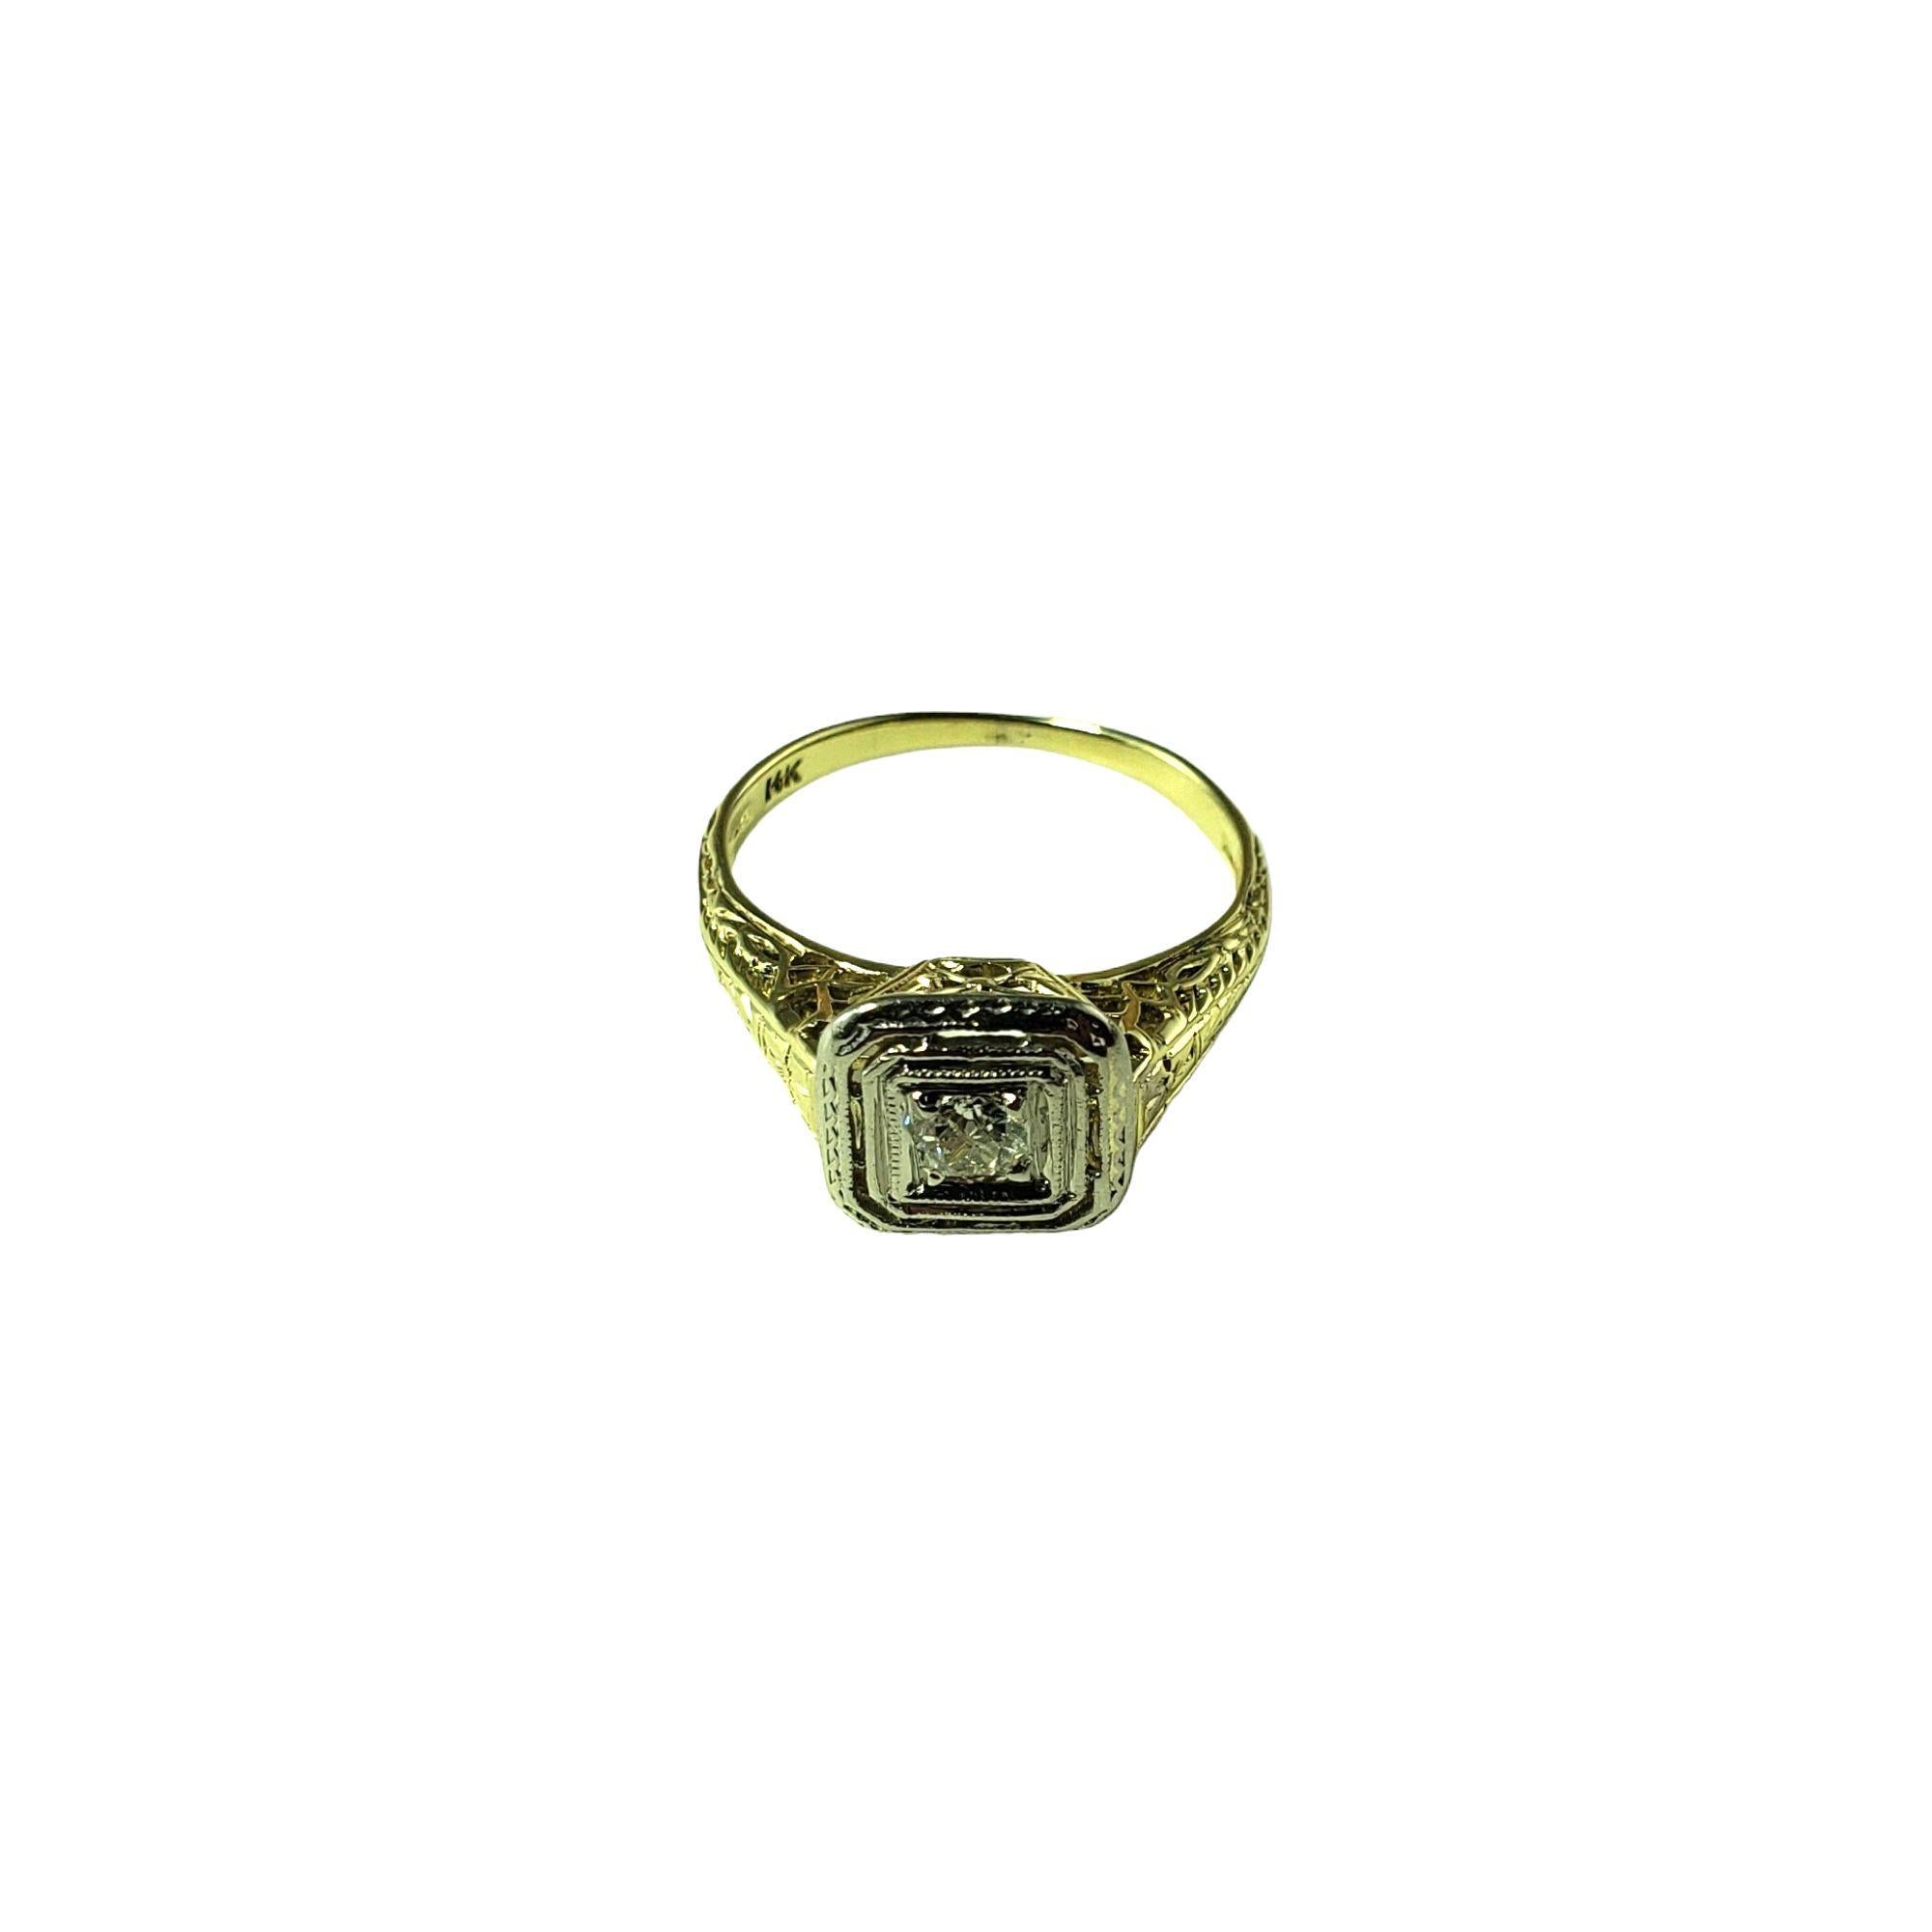 Dieser funkelnde Ring besteht aus einem runden Diamanten mit europäischem Schliff, gefasst in wunderschön detailliertem 14-karätigem Weiß- und Gelbgold.

Ungefähres Gesamtgewicht der Diamanten: .15ct.

Farbe des Diamanten: G

Reinheit des Diamanten: